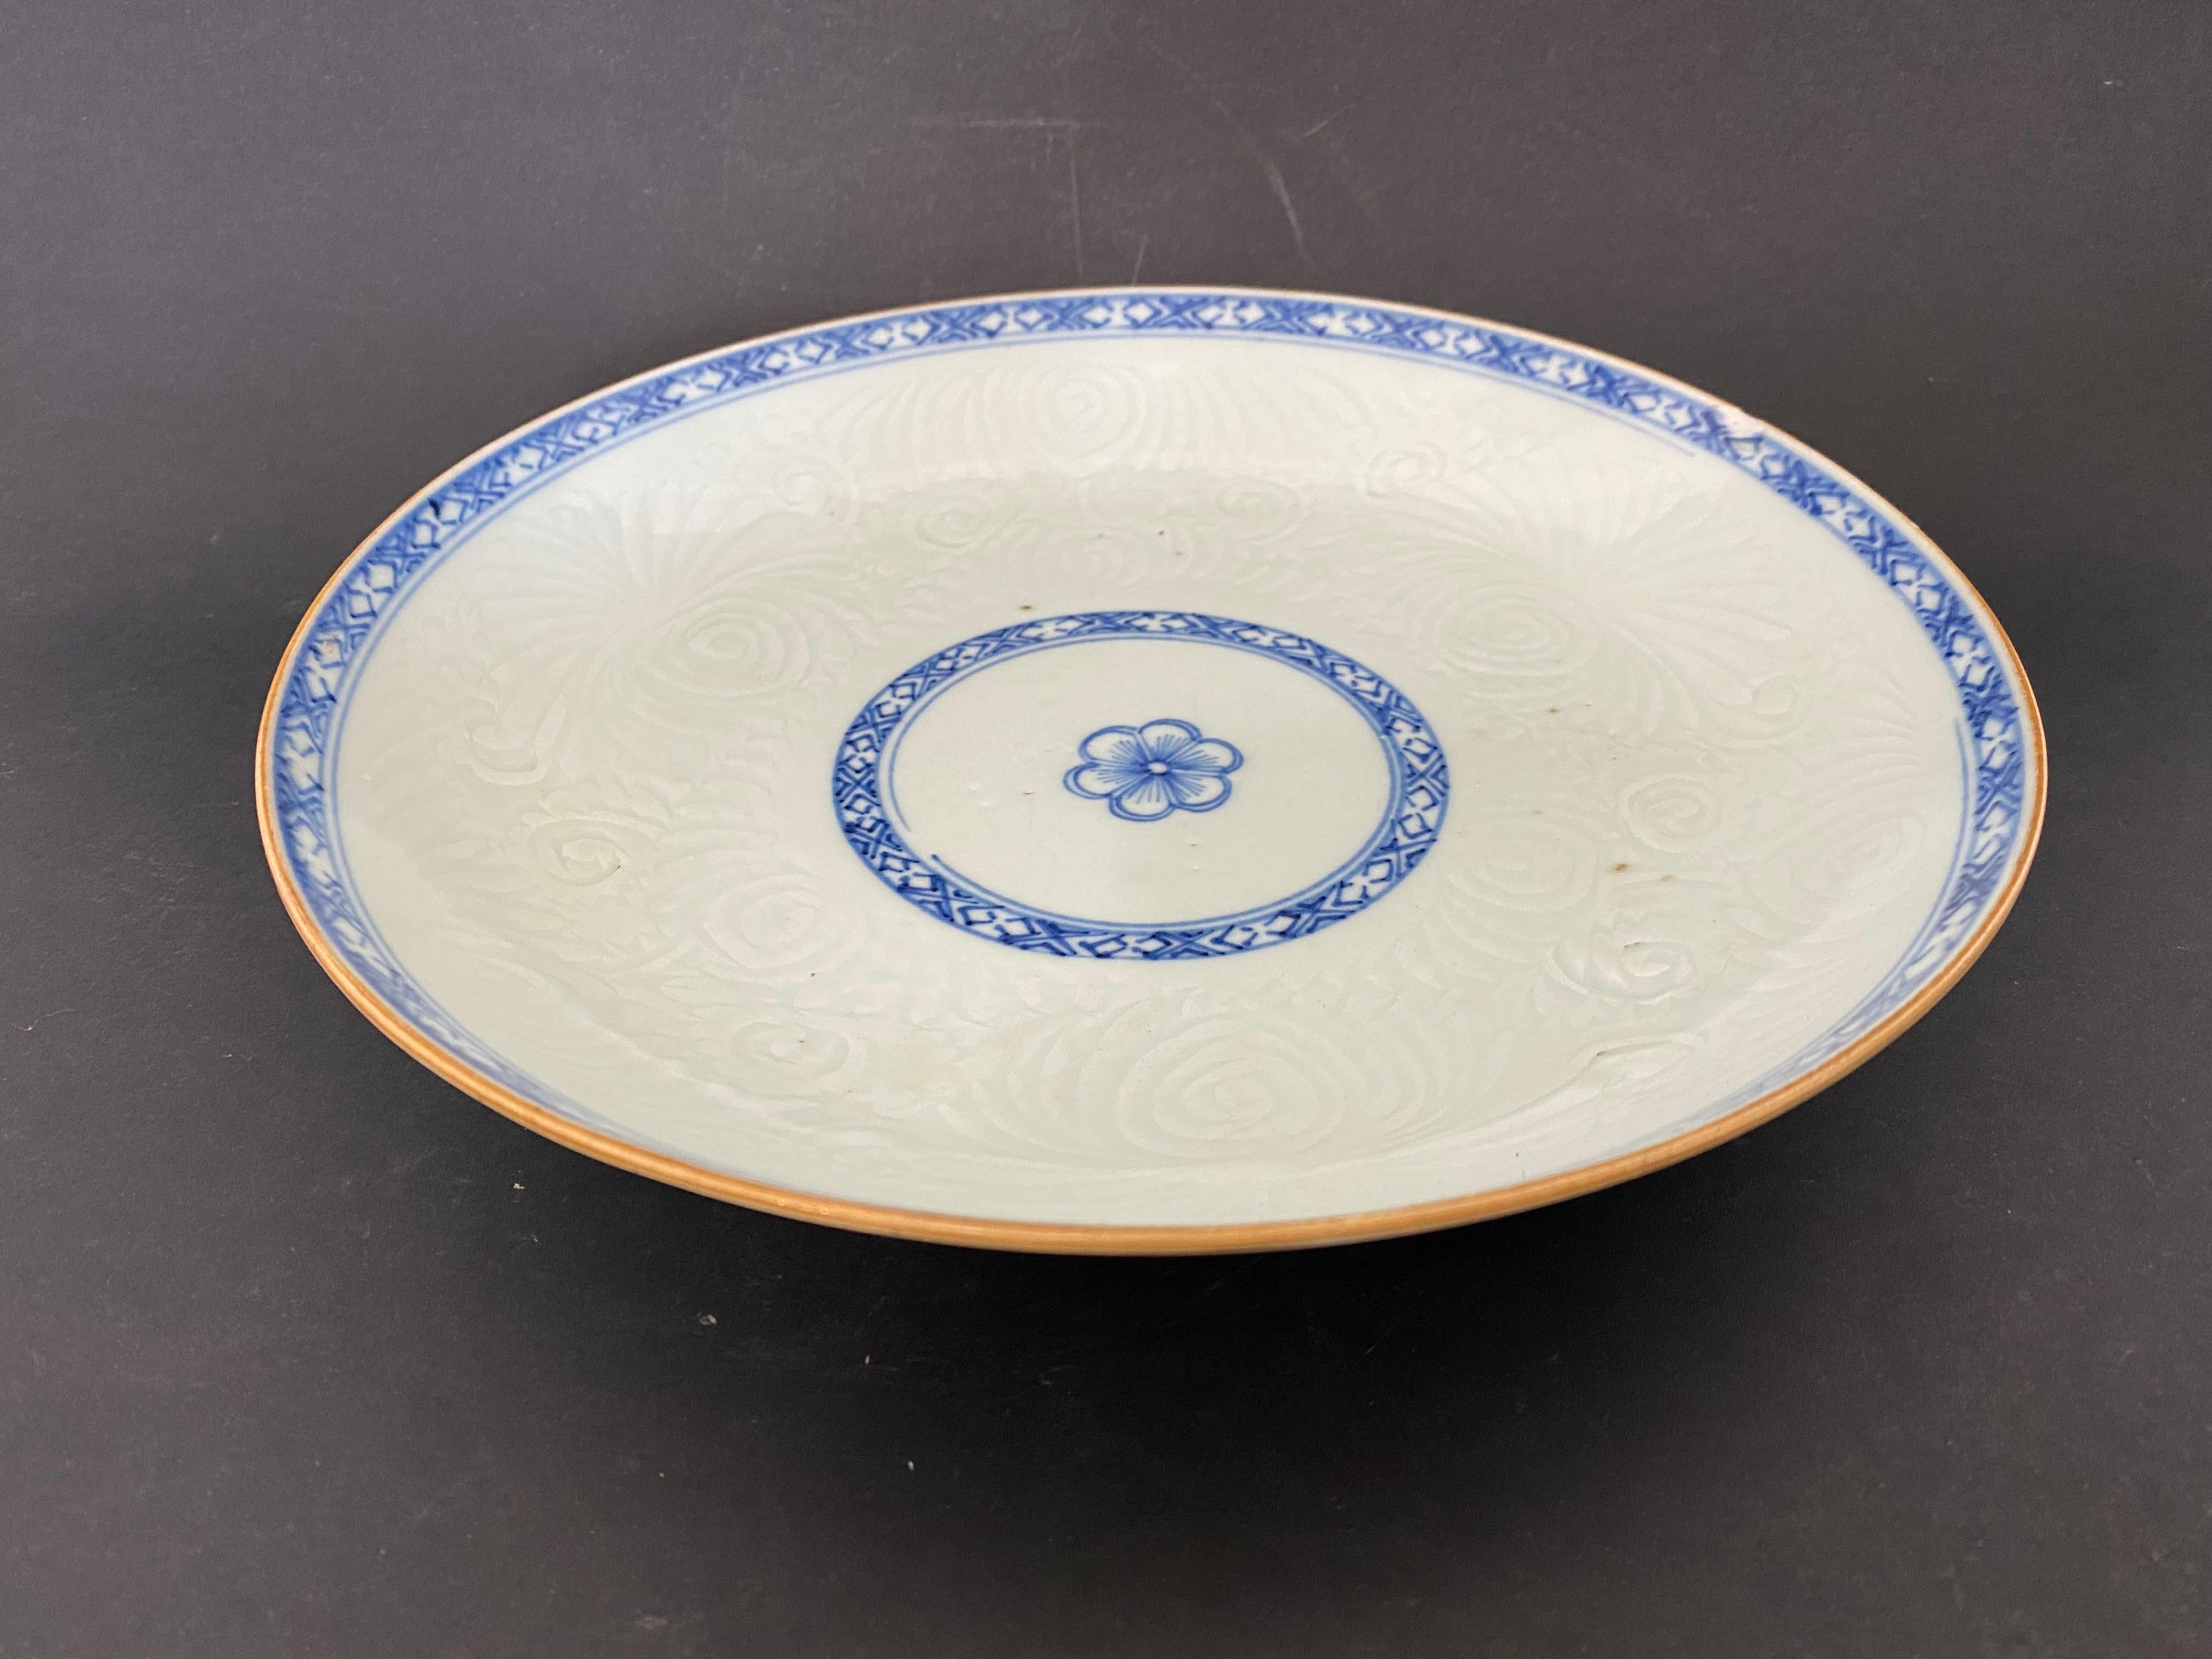 Schöner Teller, inspiriert von der Indischen Kompanie der Qianlong-Periode, 18. Jahrhundert, aber aus dem 19. Jahrhundert. Dieser Porzellan-Suppenteller, mit einer Blume in der Mitte von einem kobaltfarbenen pflanzlichen Fries umgeben dargestellt.